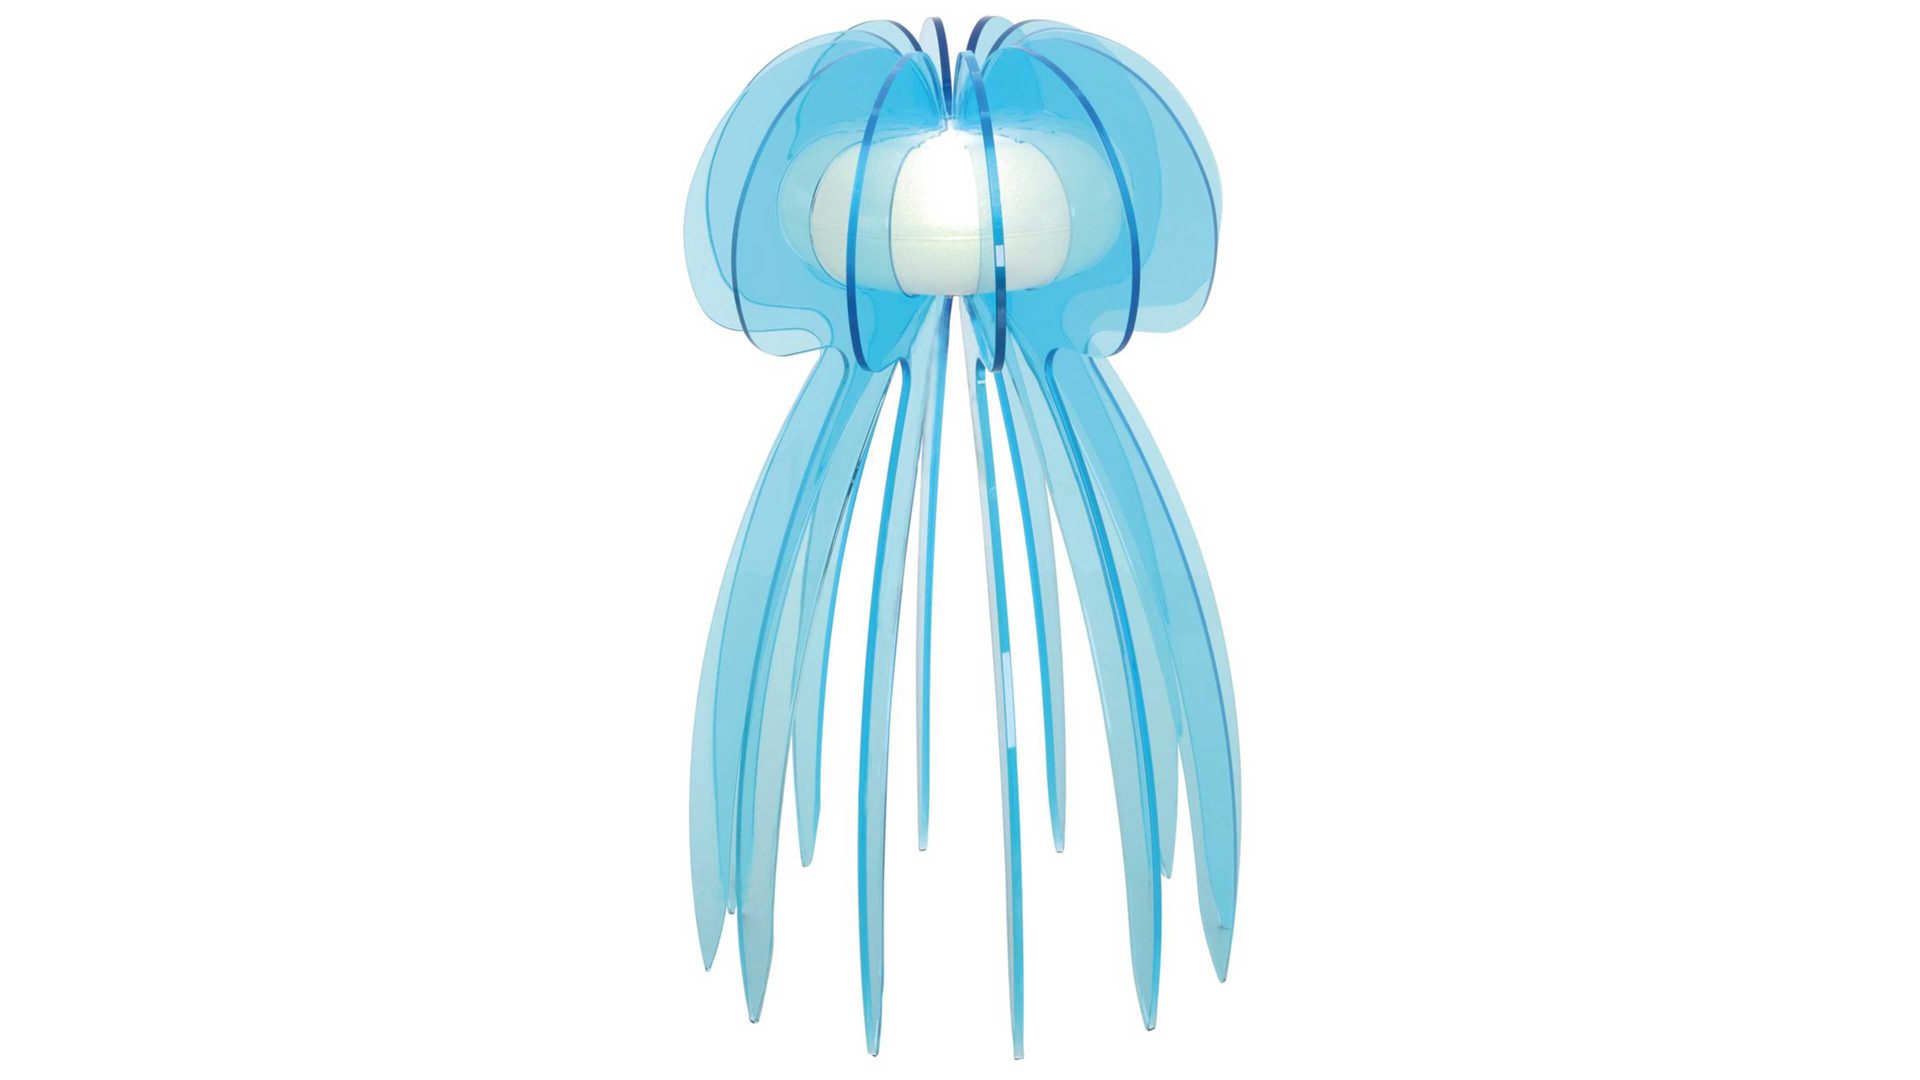 Tischleuchte Näve aus Kunststoff in Blau näve Tischlampe Jellyfish blaues Acrylglas – Höhe ca. 30 cm